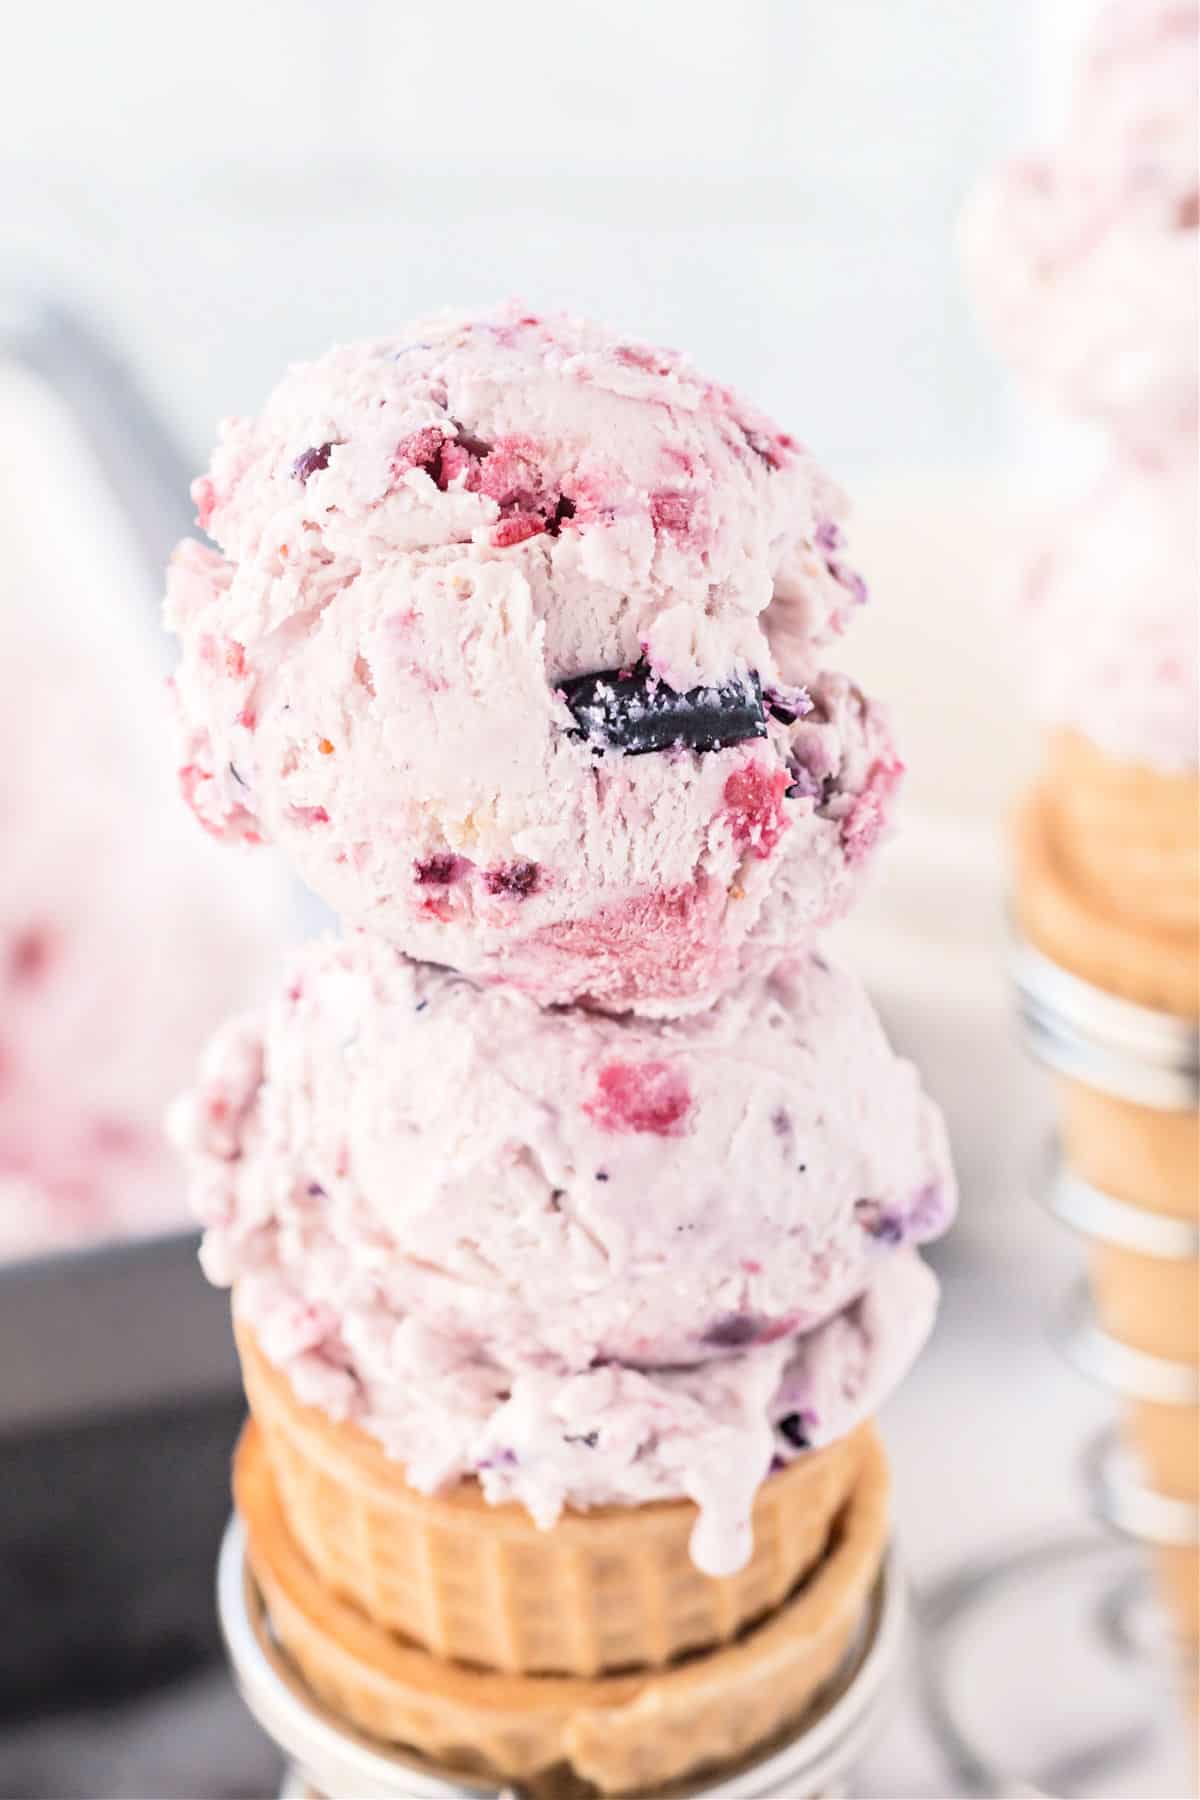 Berry ice cream scooped onto a sugar cone.